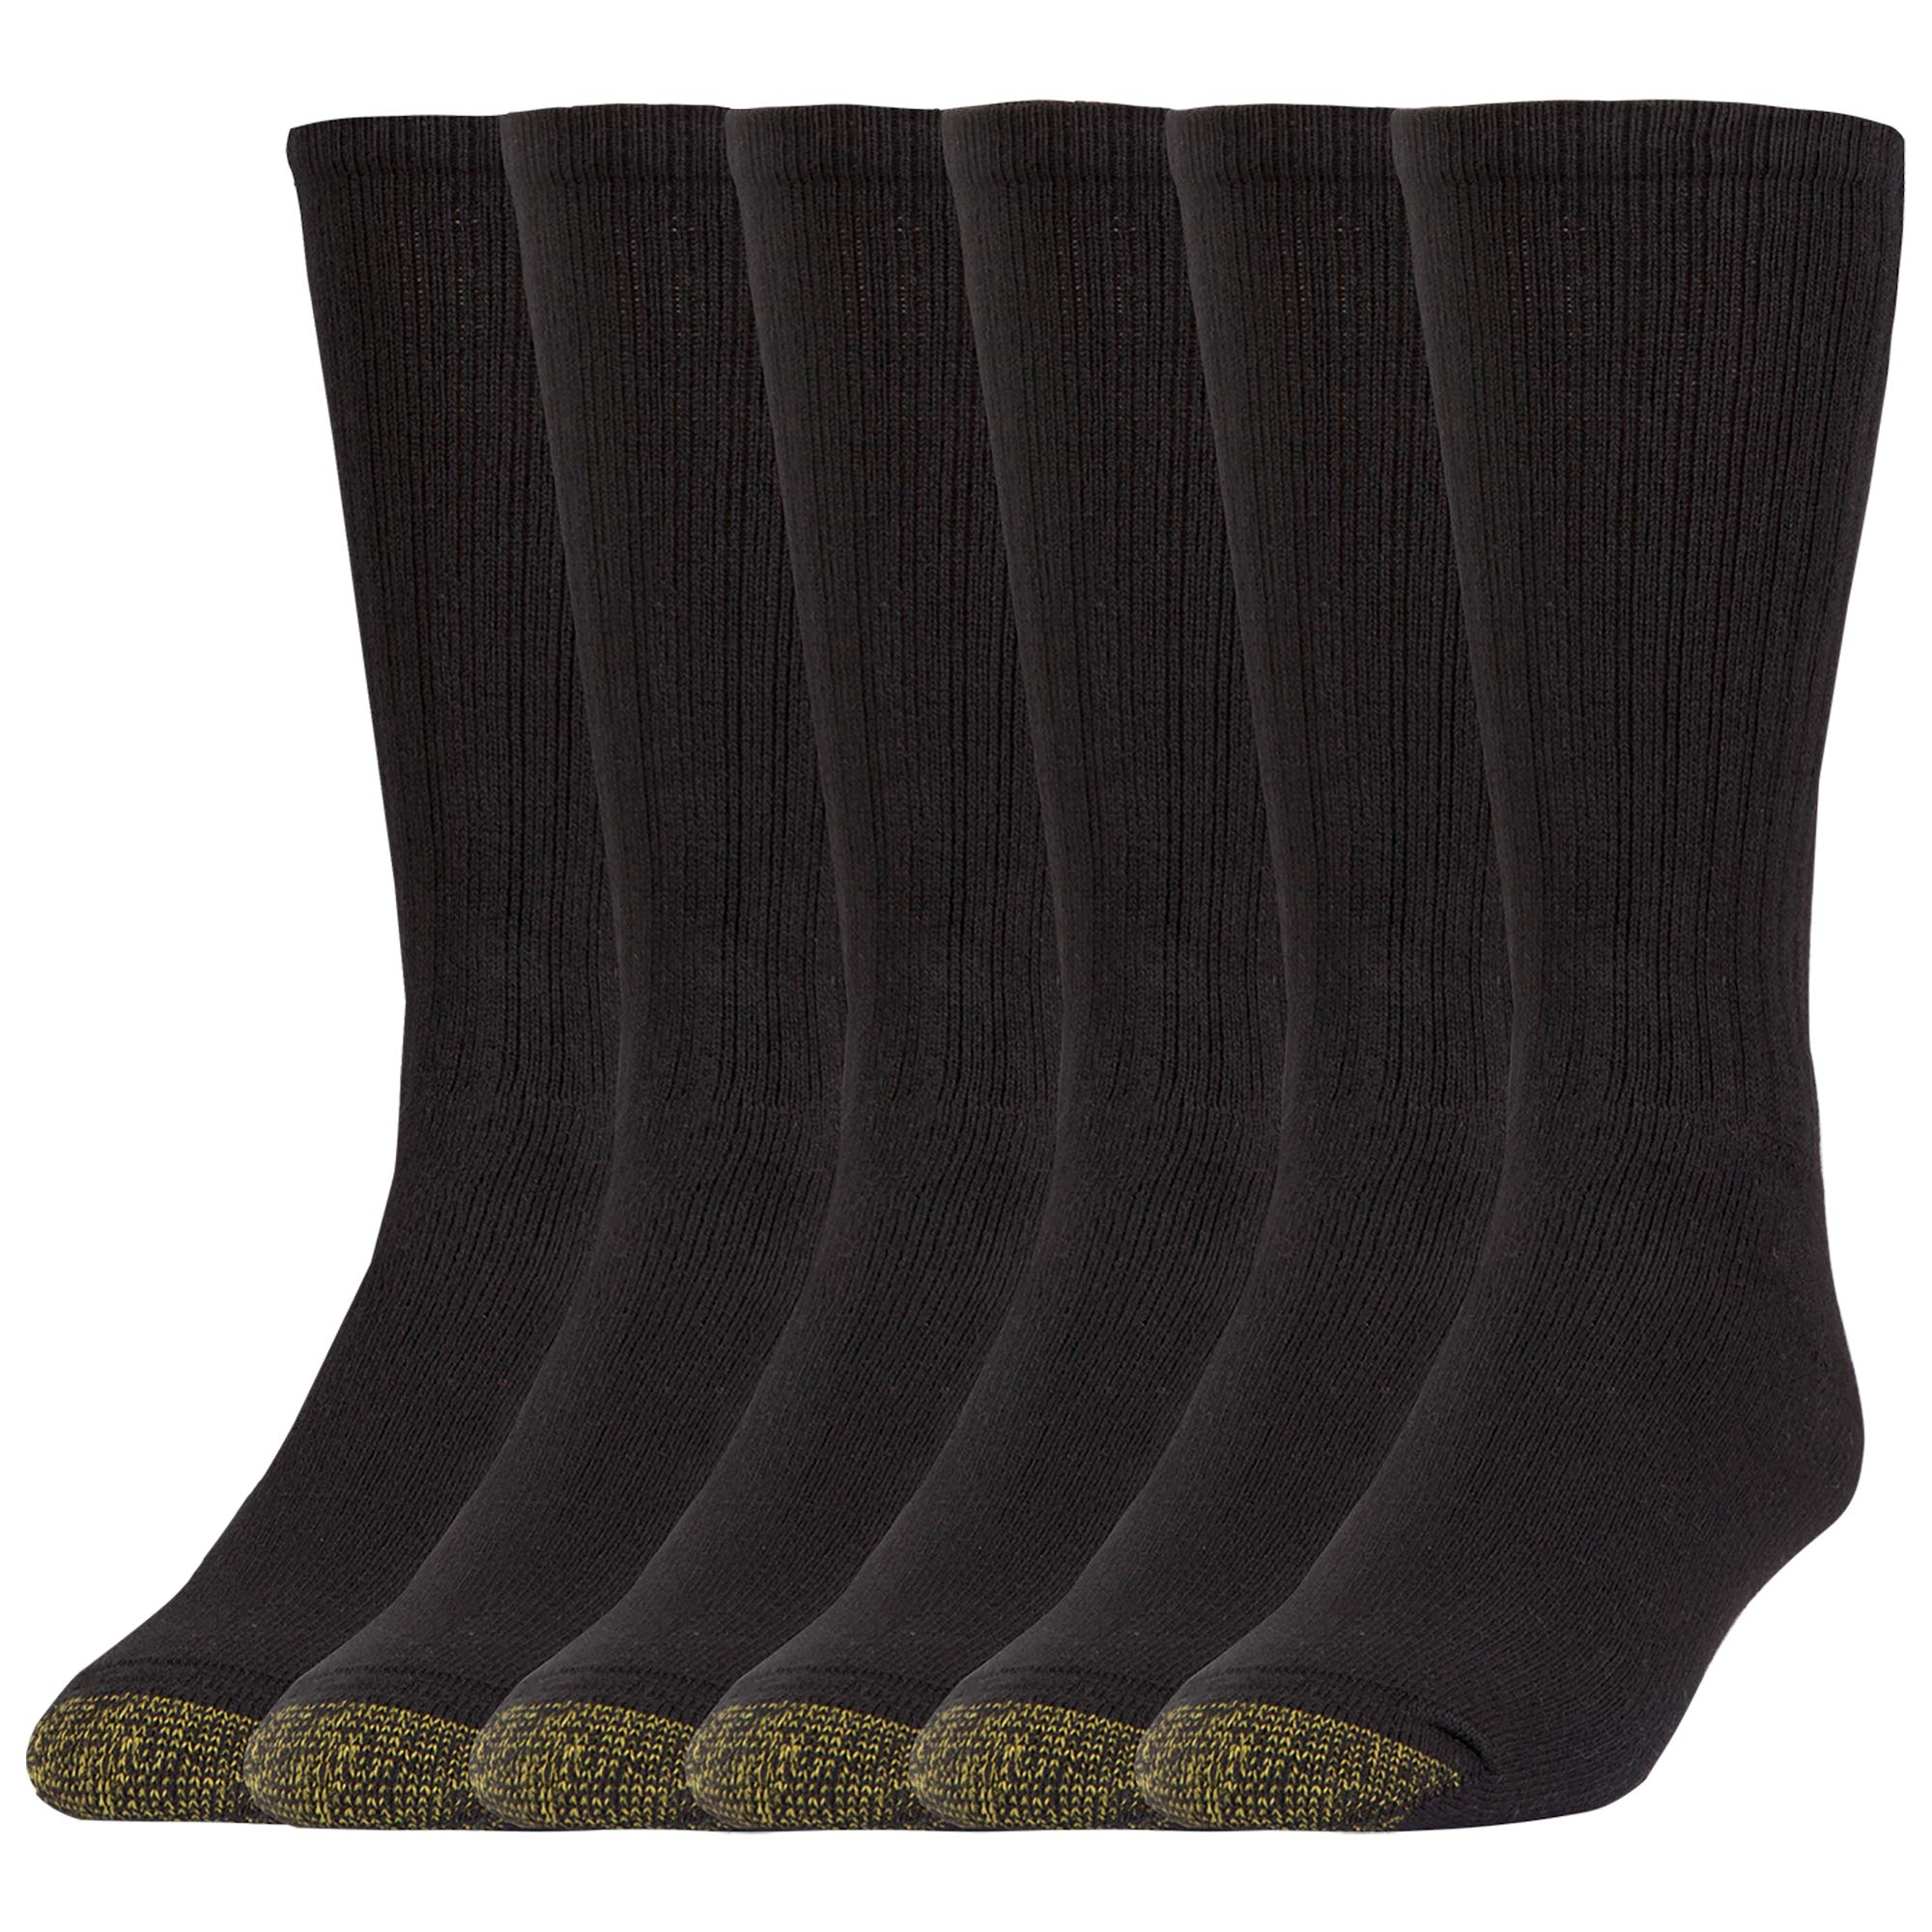 6-Pairs Gold Toe Men's Harrington Crew Socks (Black, Large) $10 + Free Shipping w/ Prime or on $35+